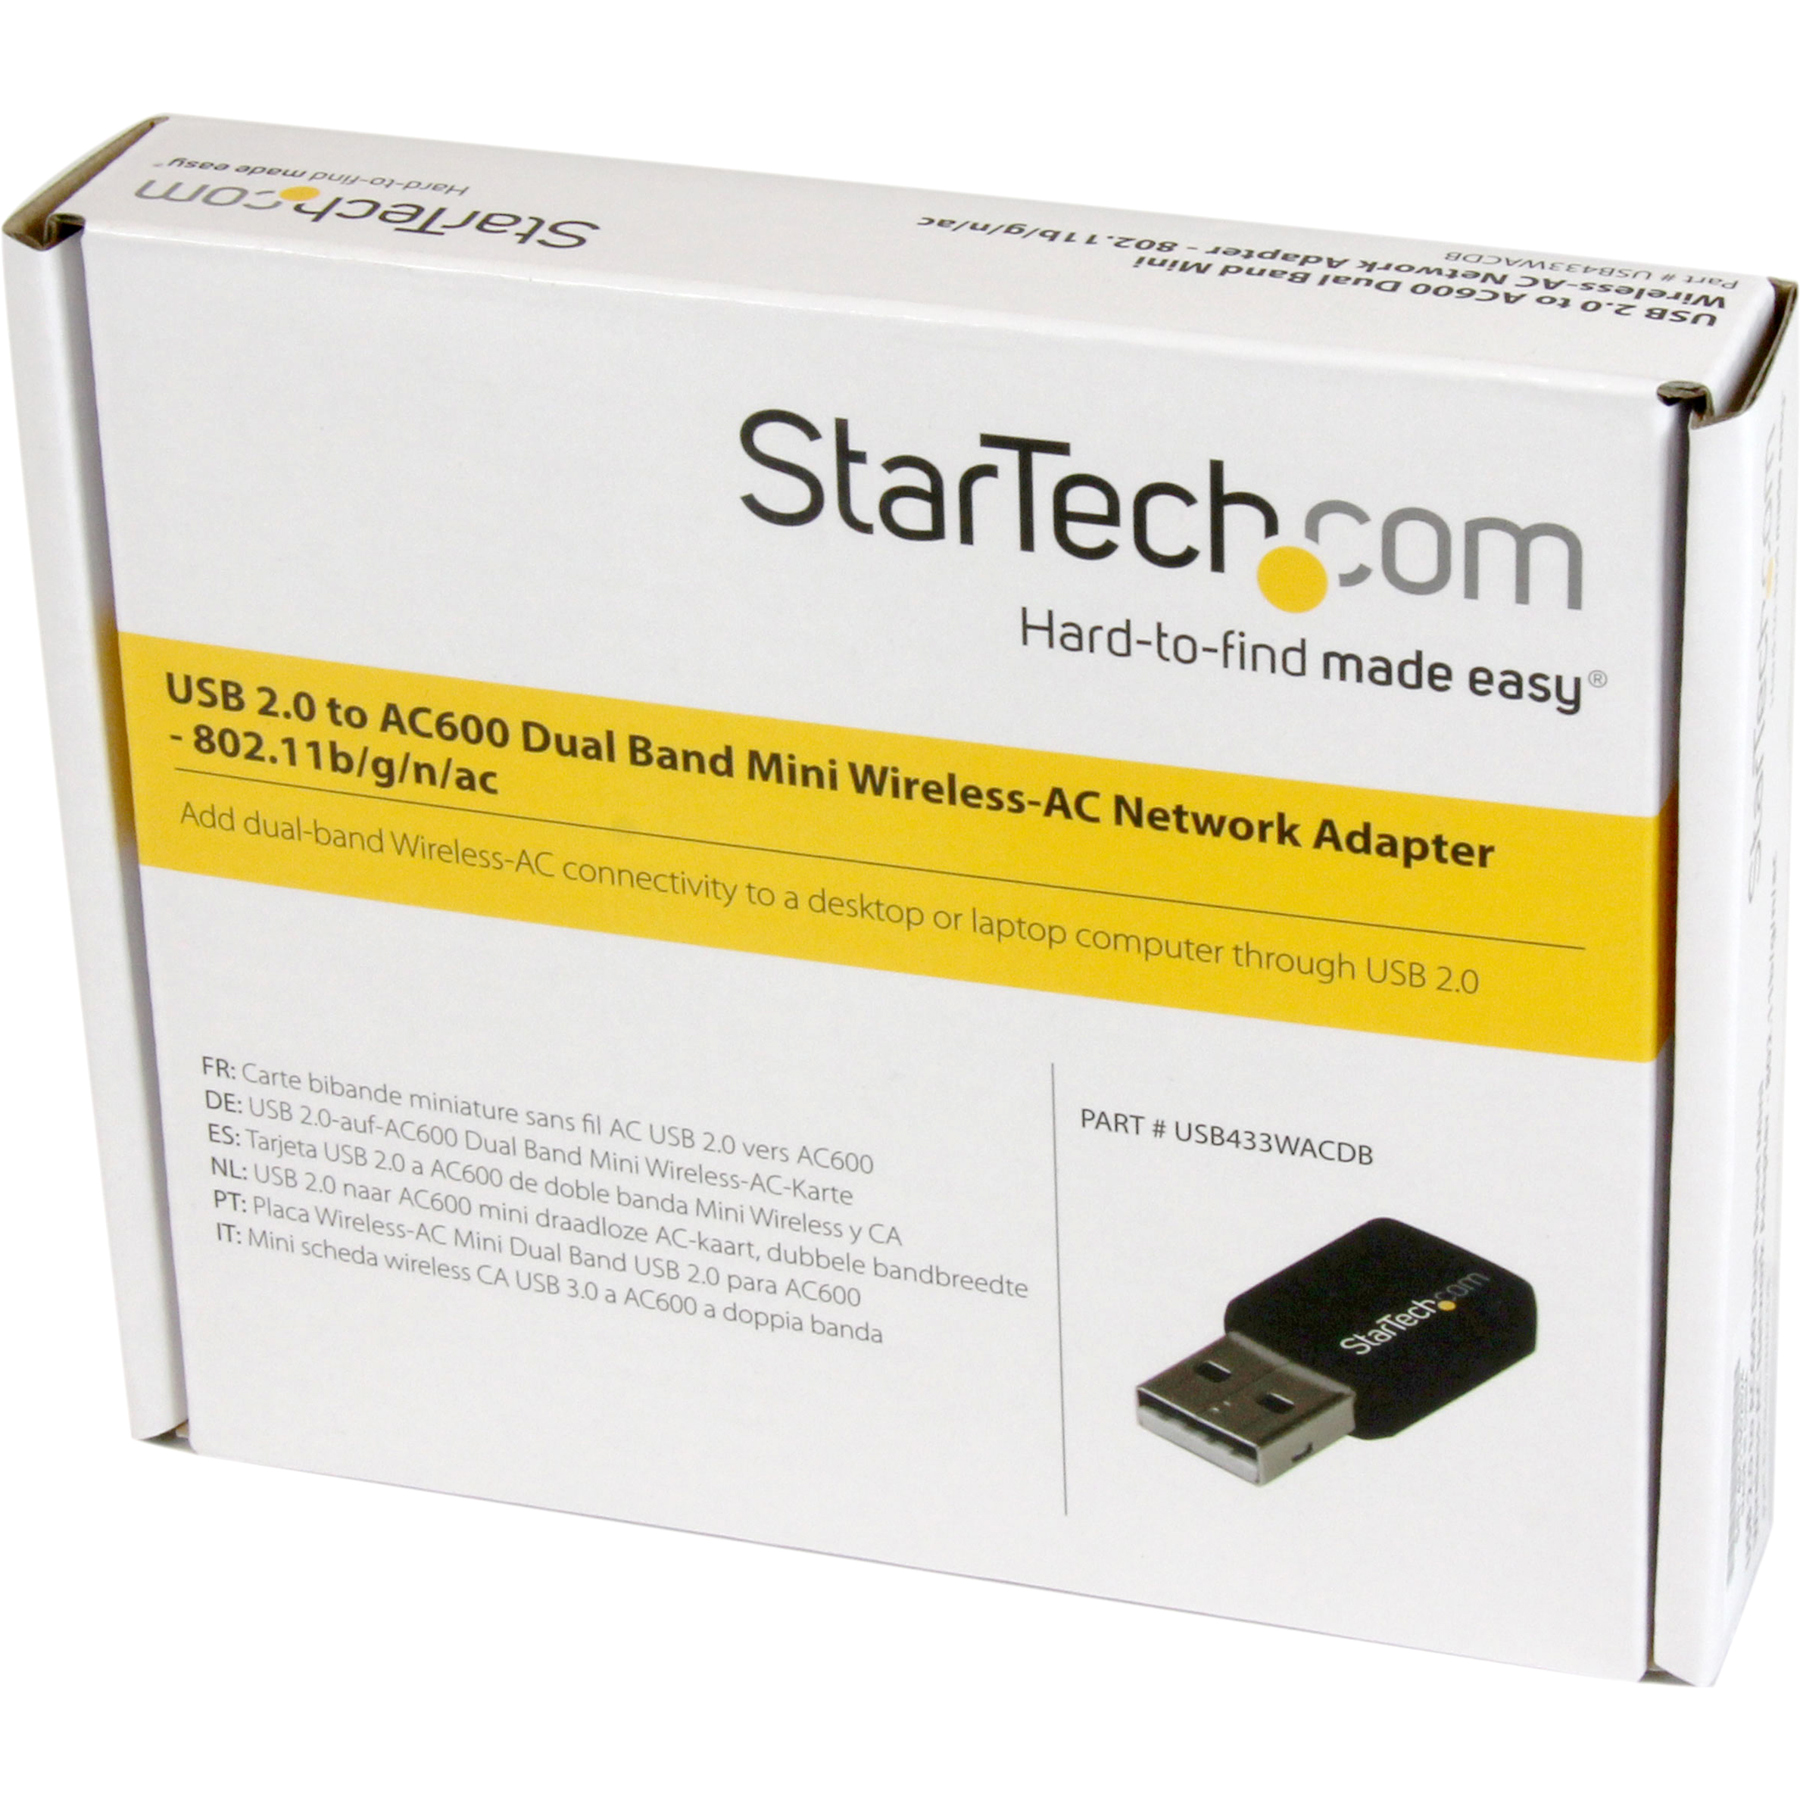 StarTech.com USB 2.0 AC600 Mini Dual Band Wireless-AC Network Adapter - 1T1R 802.11ac WiFi Adapter - 2.4GHz / 5GHz USB Wireless (USB433WACDB), Black - image 5 of 5